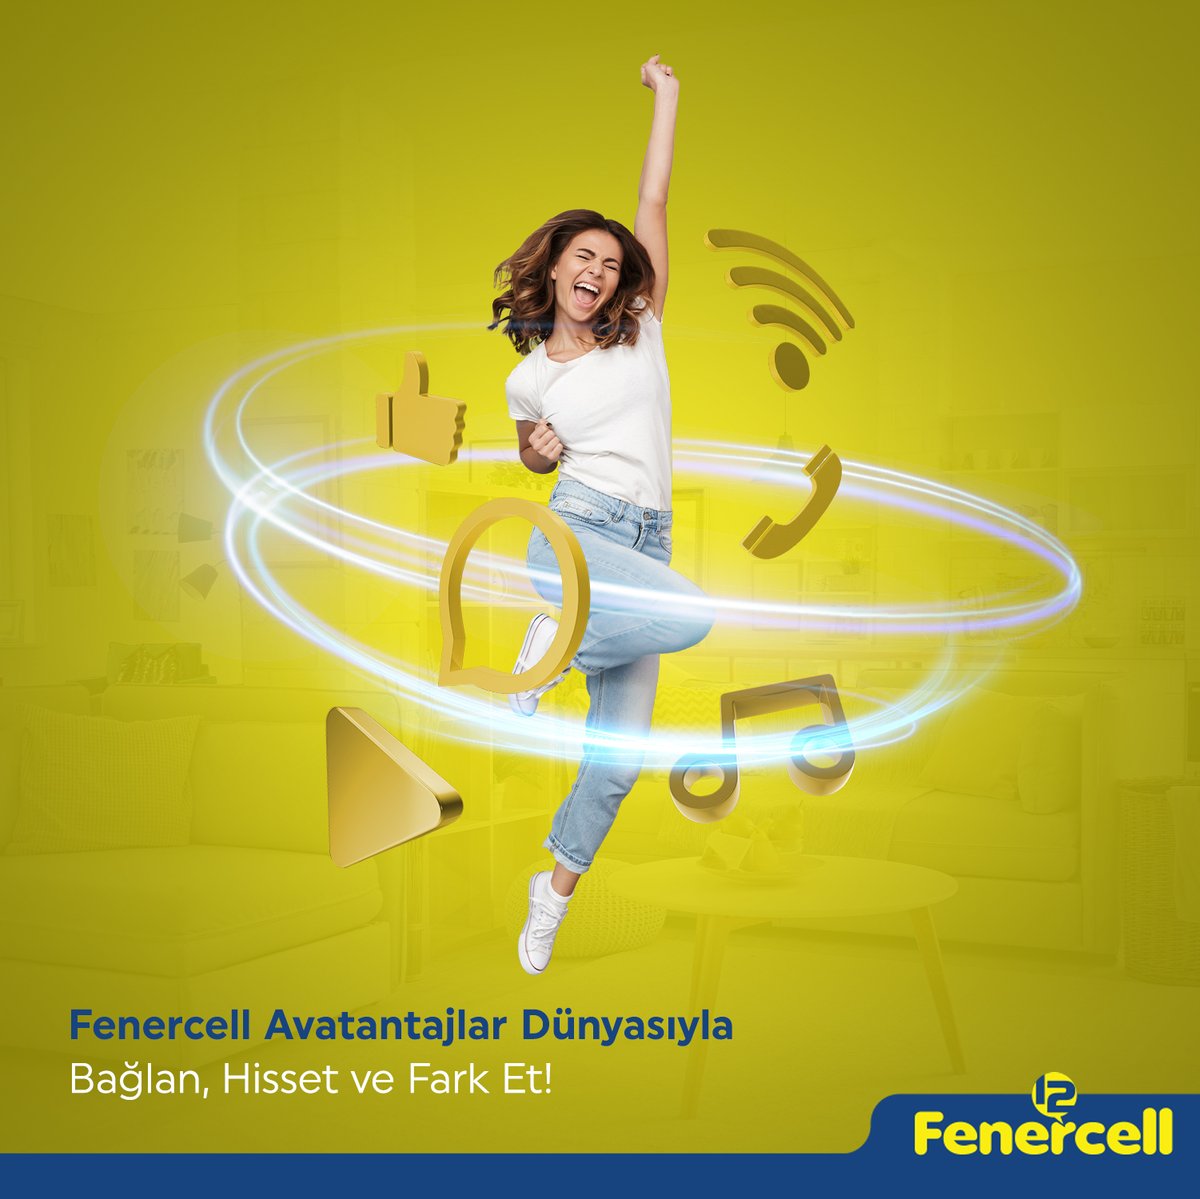 Fenercell avantajlar dünyasıyla tanışın. Fenercell'lilerle sınırsız konuşun. Fenercell ile bağlan, hisset ve fark et! #fenerbahce #fenercell